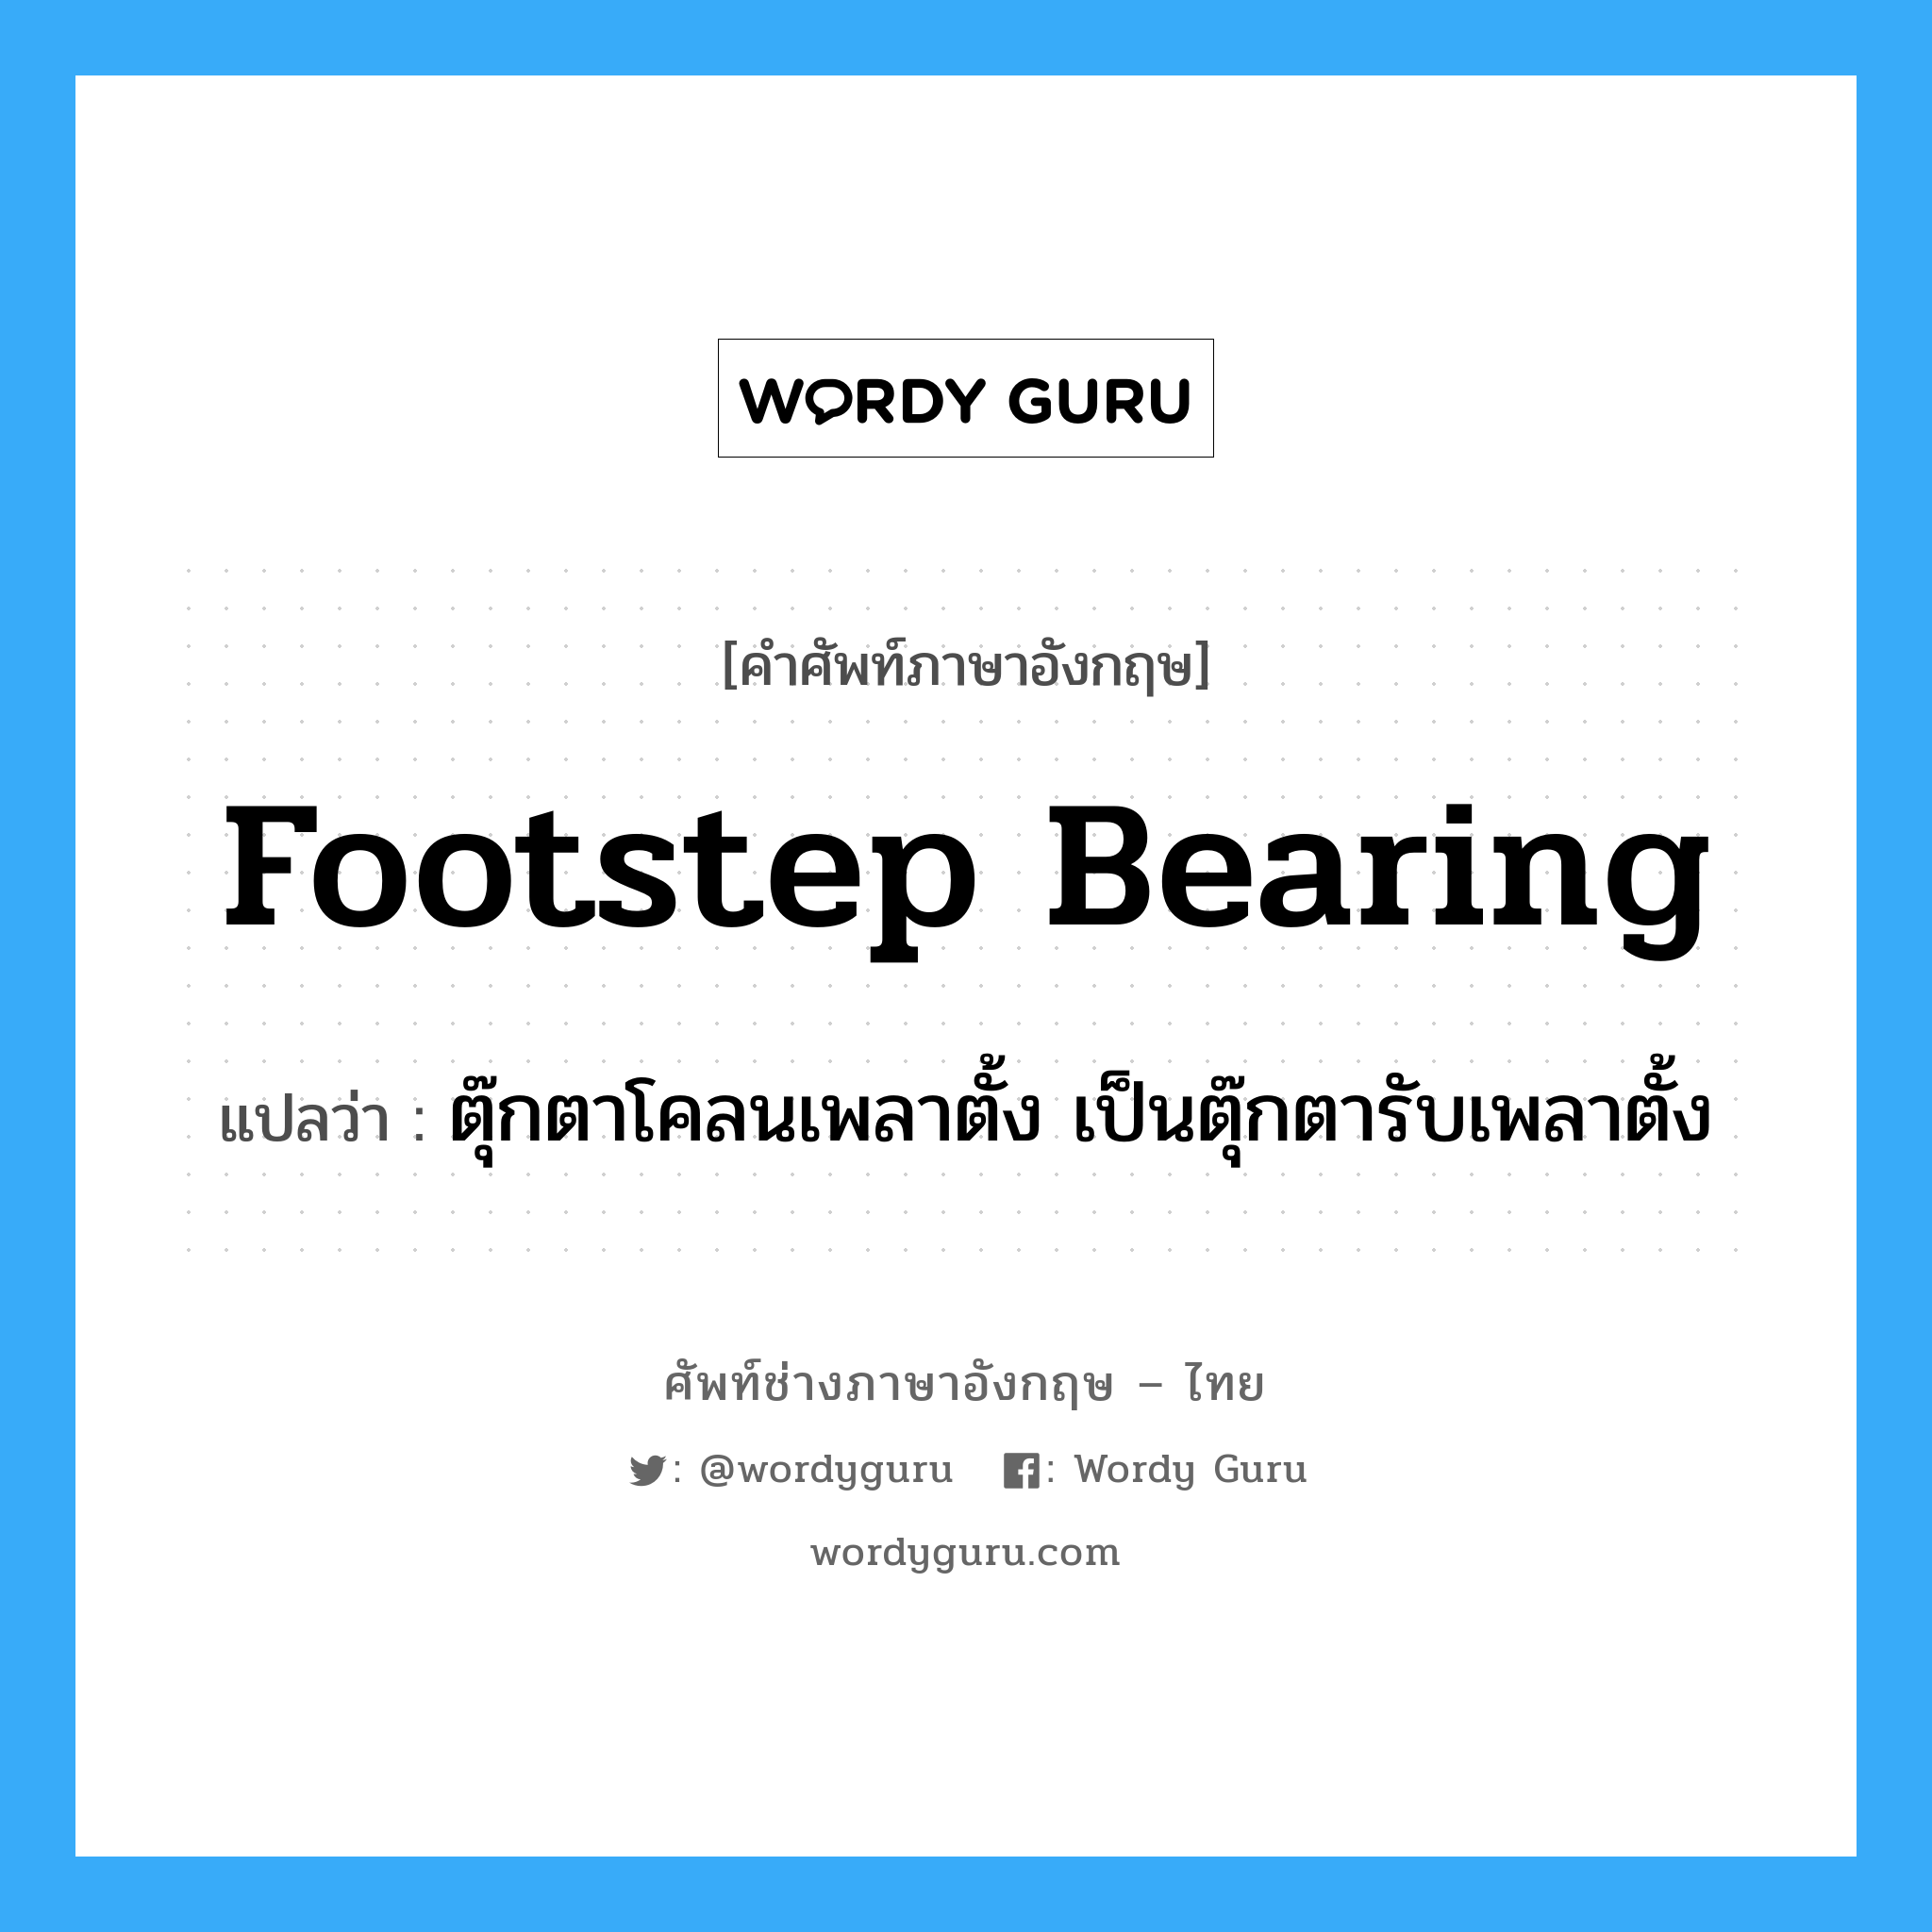 footstep bearing แปลว่า?, คำศัพท์ช่างภาษาอังกฤษ - ไทย footstep bearing คำศัพท์ภาษาอังกฤษ footstep bearing แปลว่า ตุ๊กตาโคลนเพลาตั้ง เป็นตุ๊กตารับเพลาตั้ง